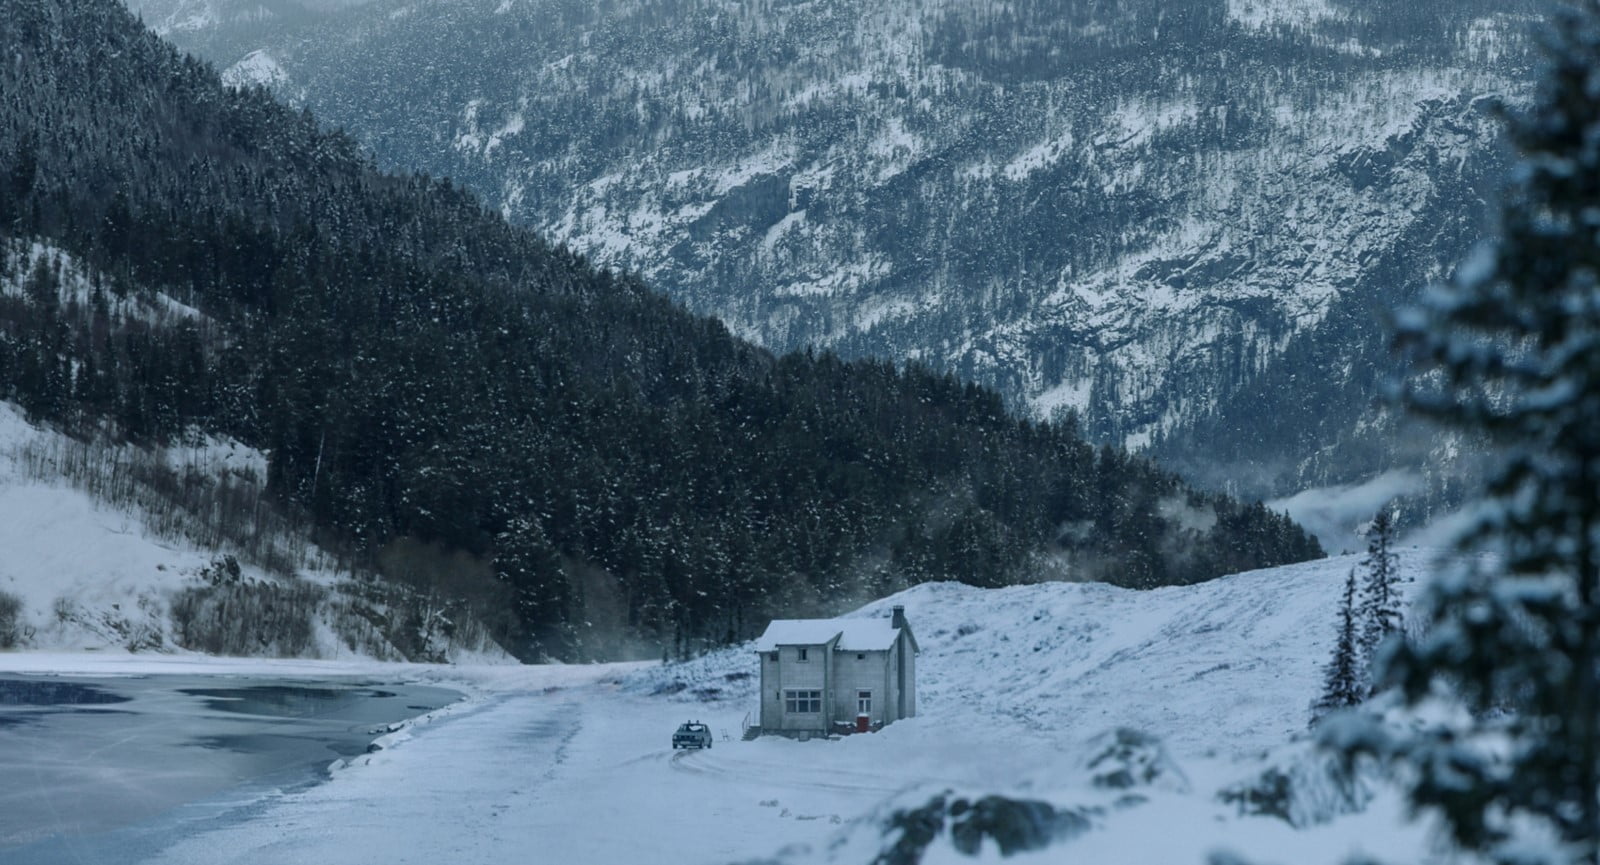 Bonhomme de neige "Le bonhomme de neige" de Jo Nesbo adapté en film !